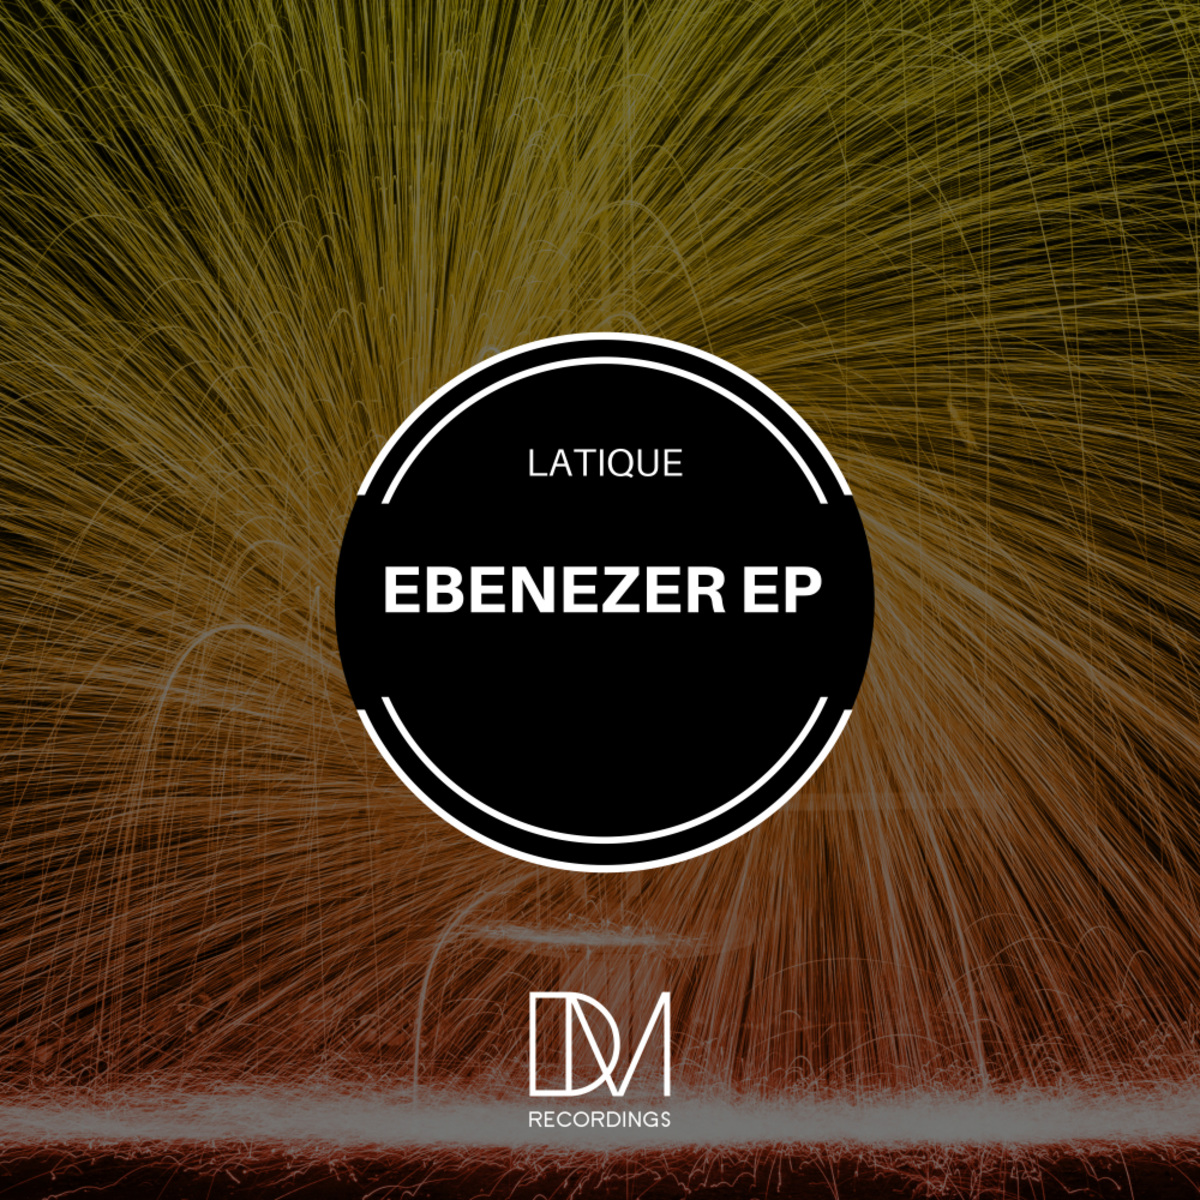 LaTique - Ebenezer EP / DM.Recordings